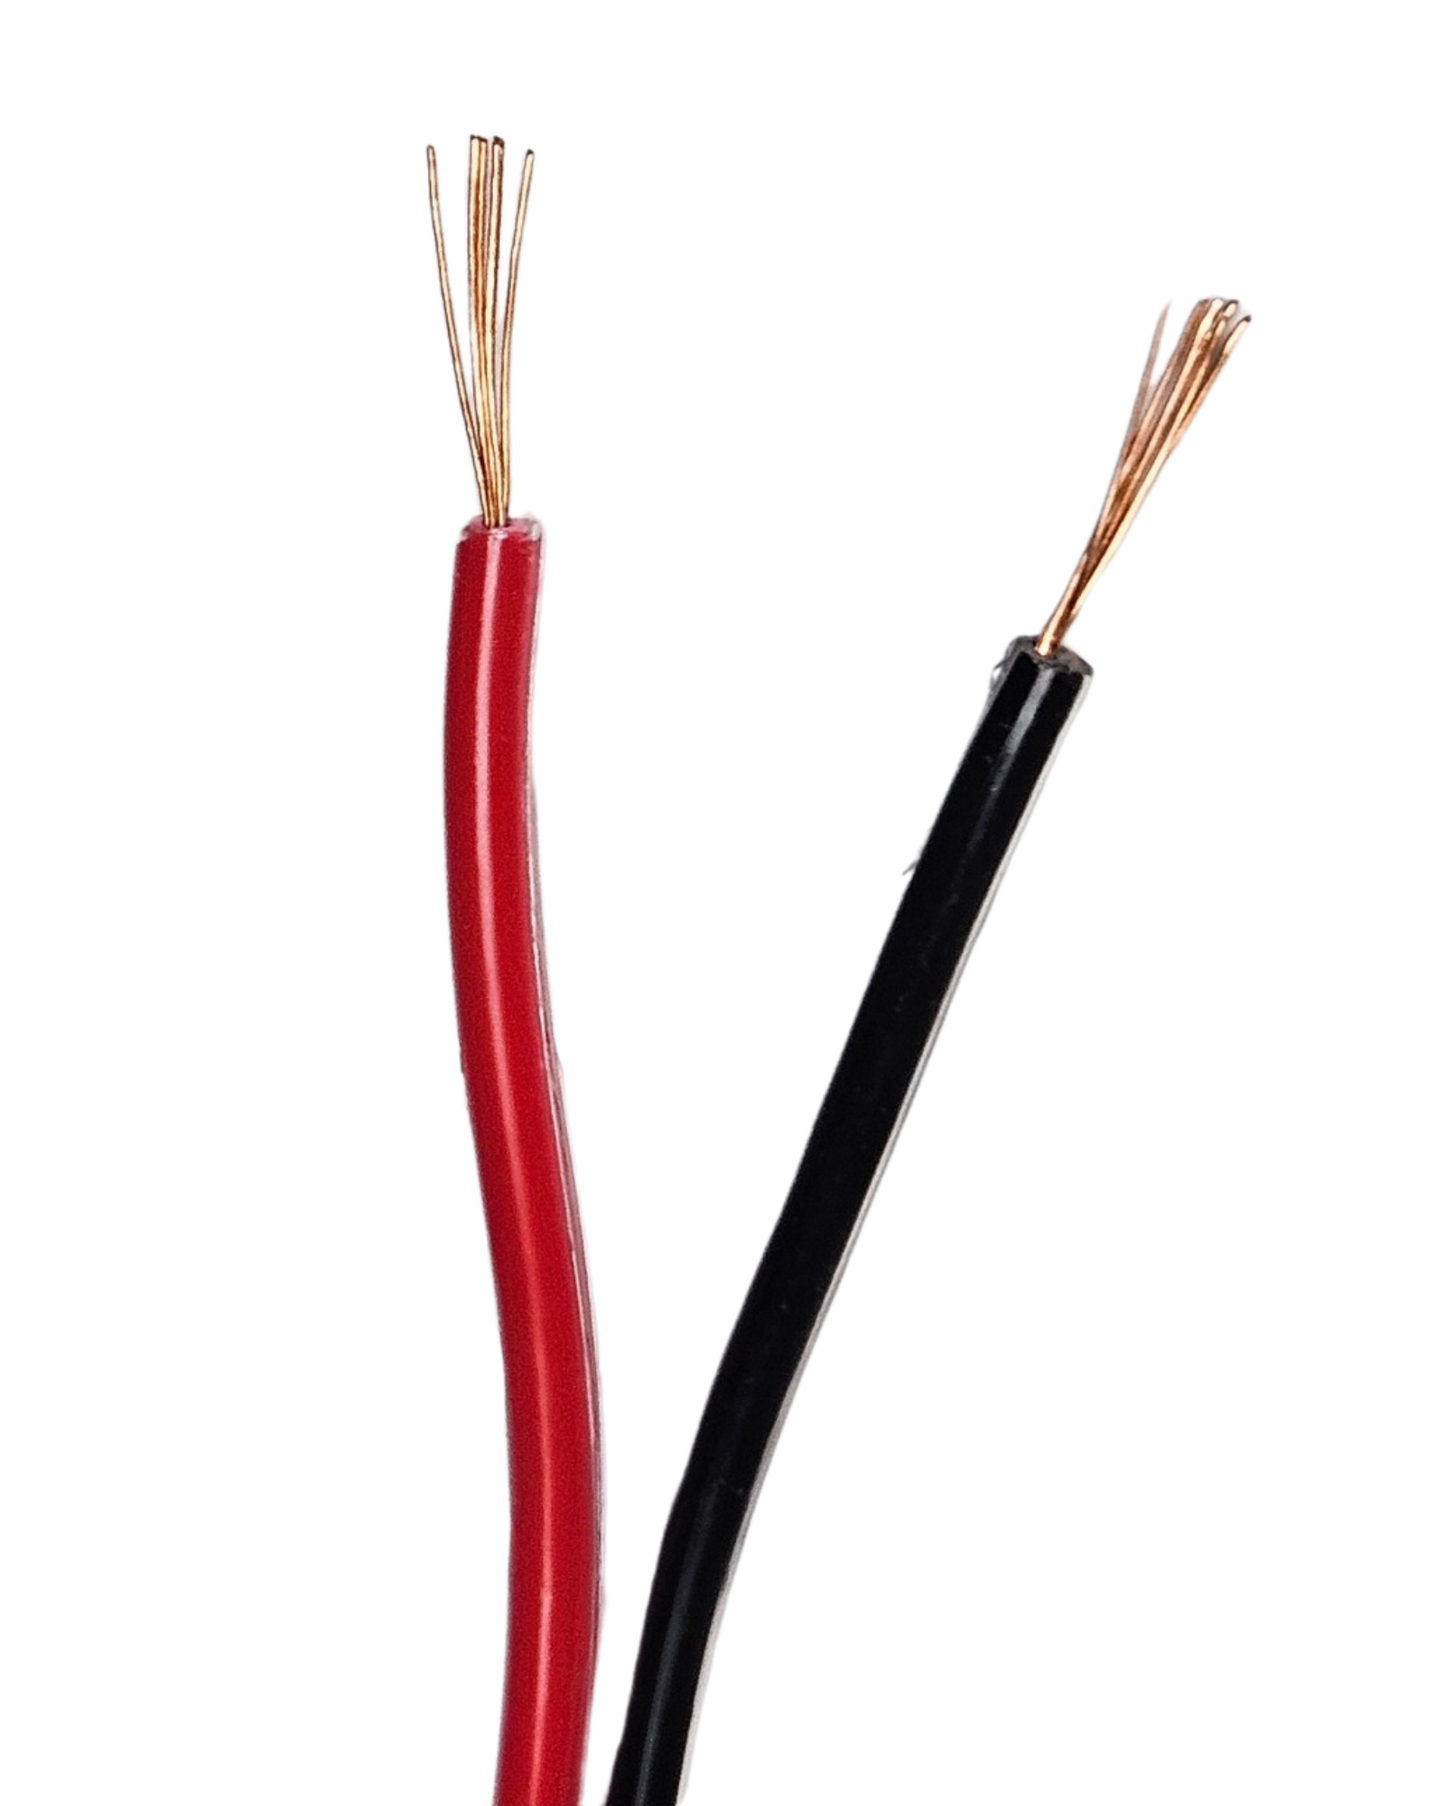 Cable bicolor calibre 18AWG 100% cobre | Cable bipolar para tira de LED